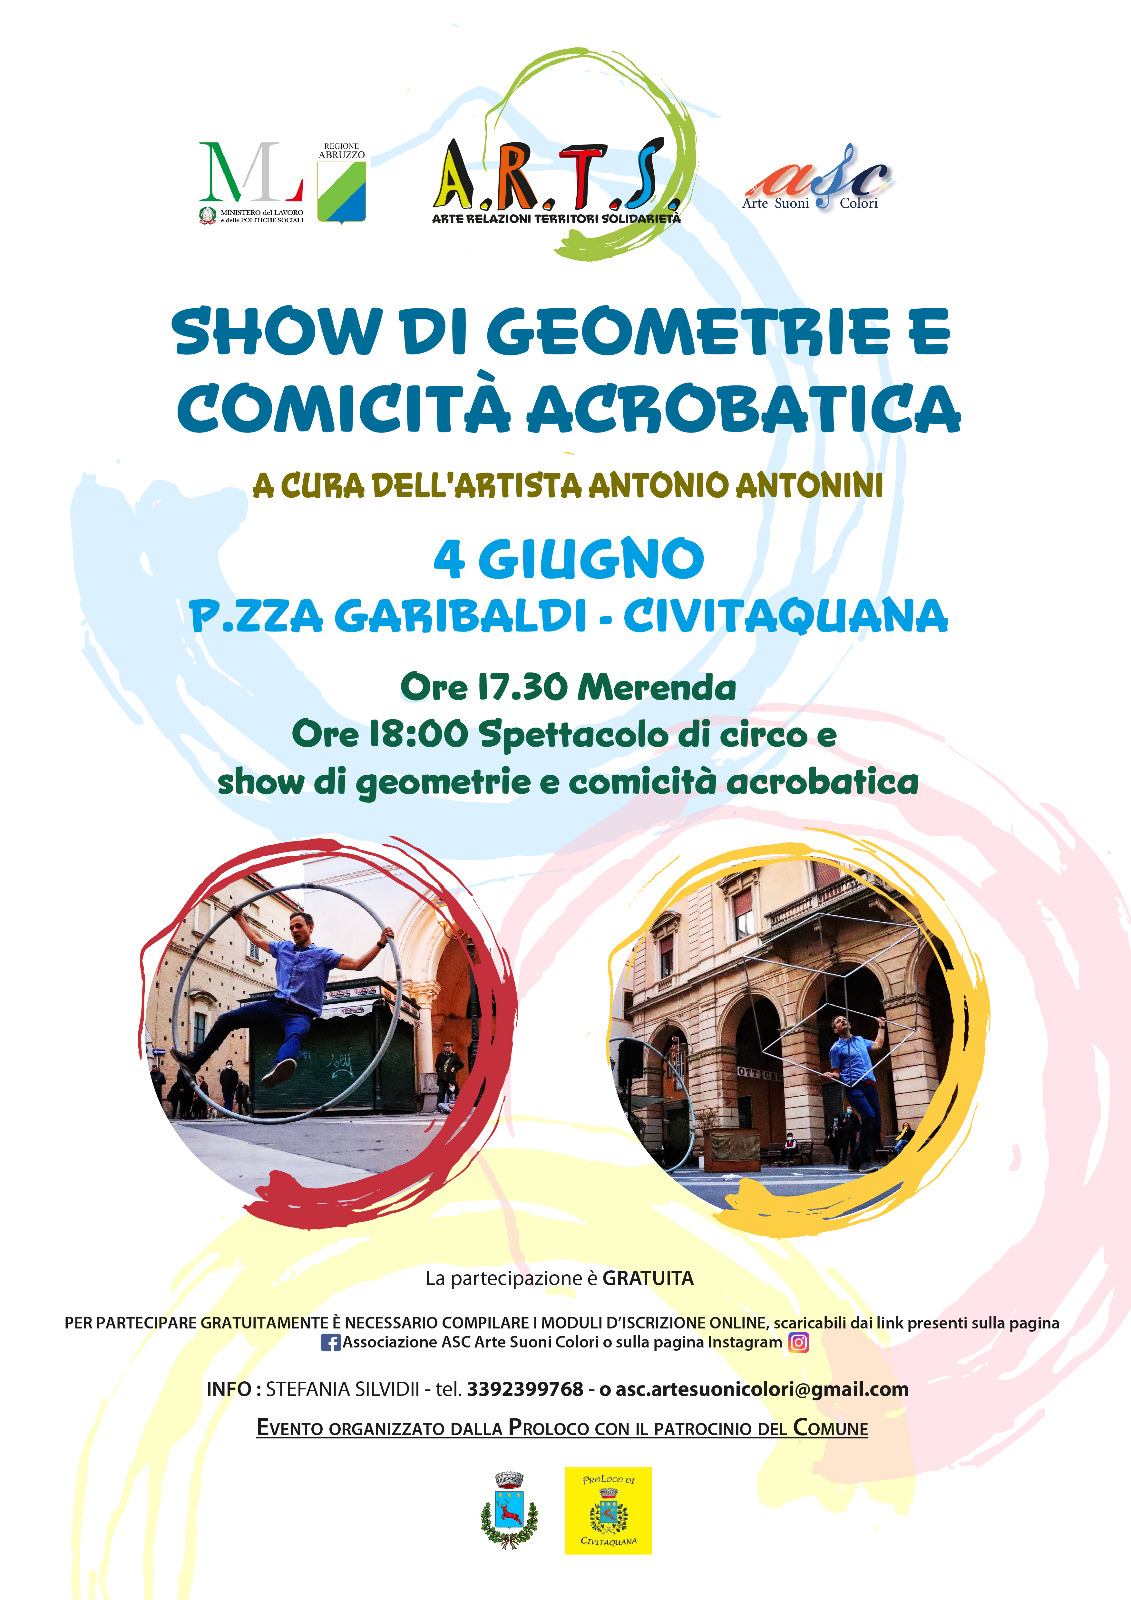 I nostri incontri estivi si arricchiscono! Antonio Antonini arriva il 4 giugno a Civitaquana per uno show di geometrie e comicità acrobatica: un'iniziativa stupenda e una grande novità!